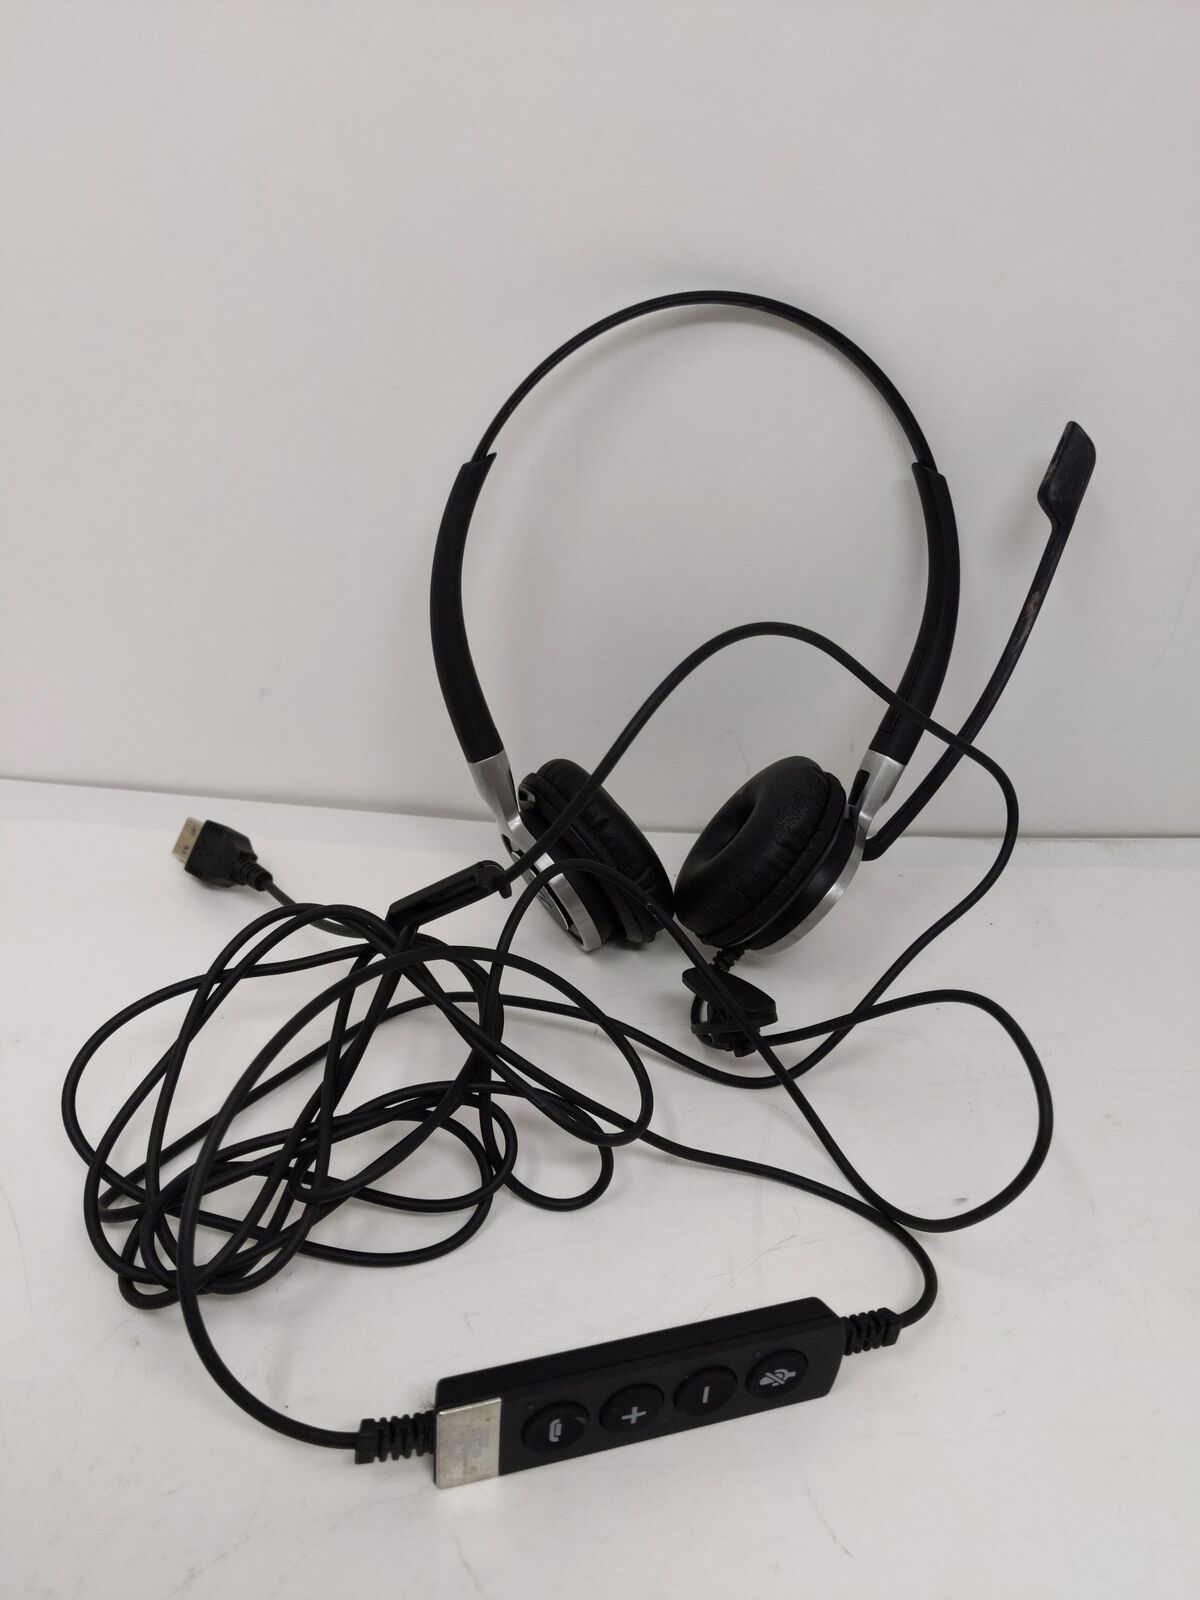 Sennheiser Consumer Audio SC 660 USB ML (504553) - Headset 